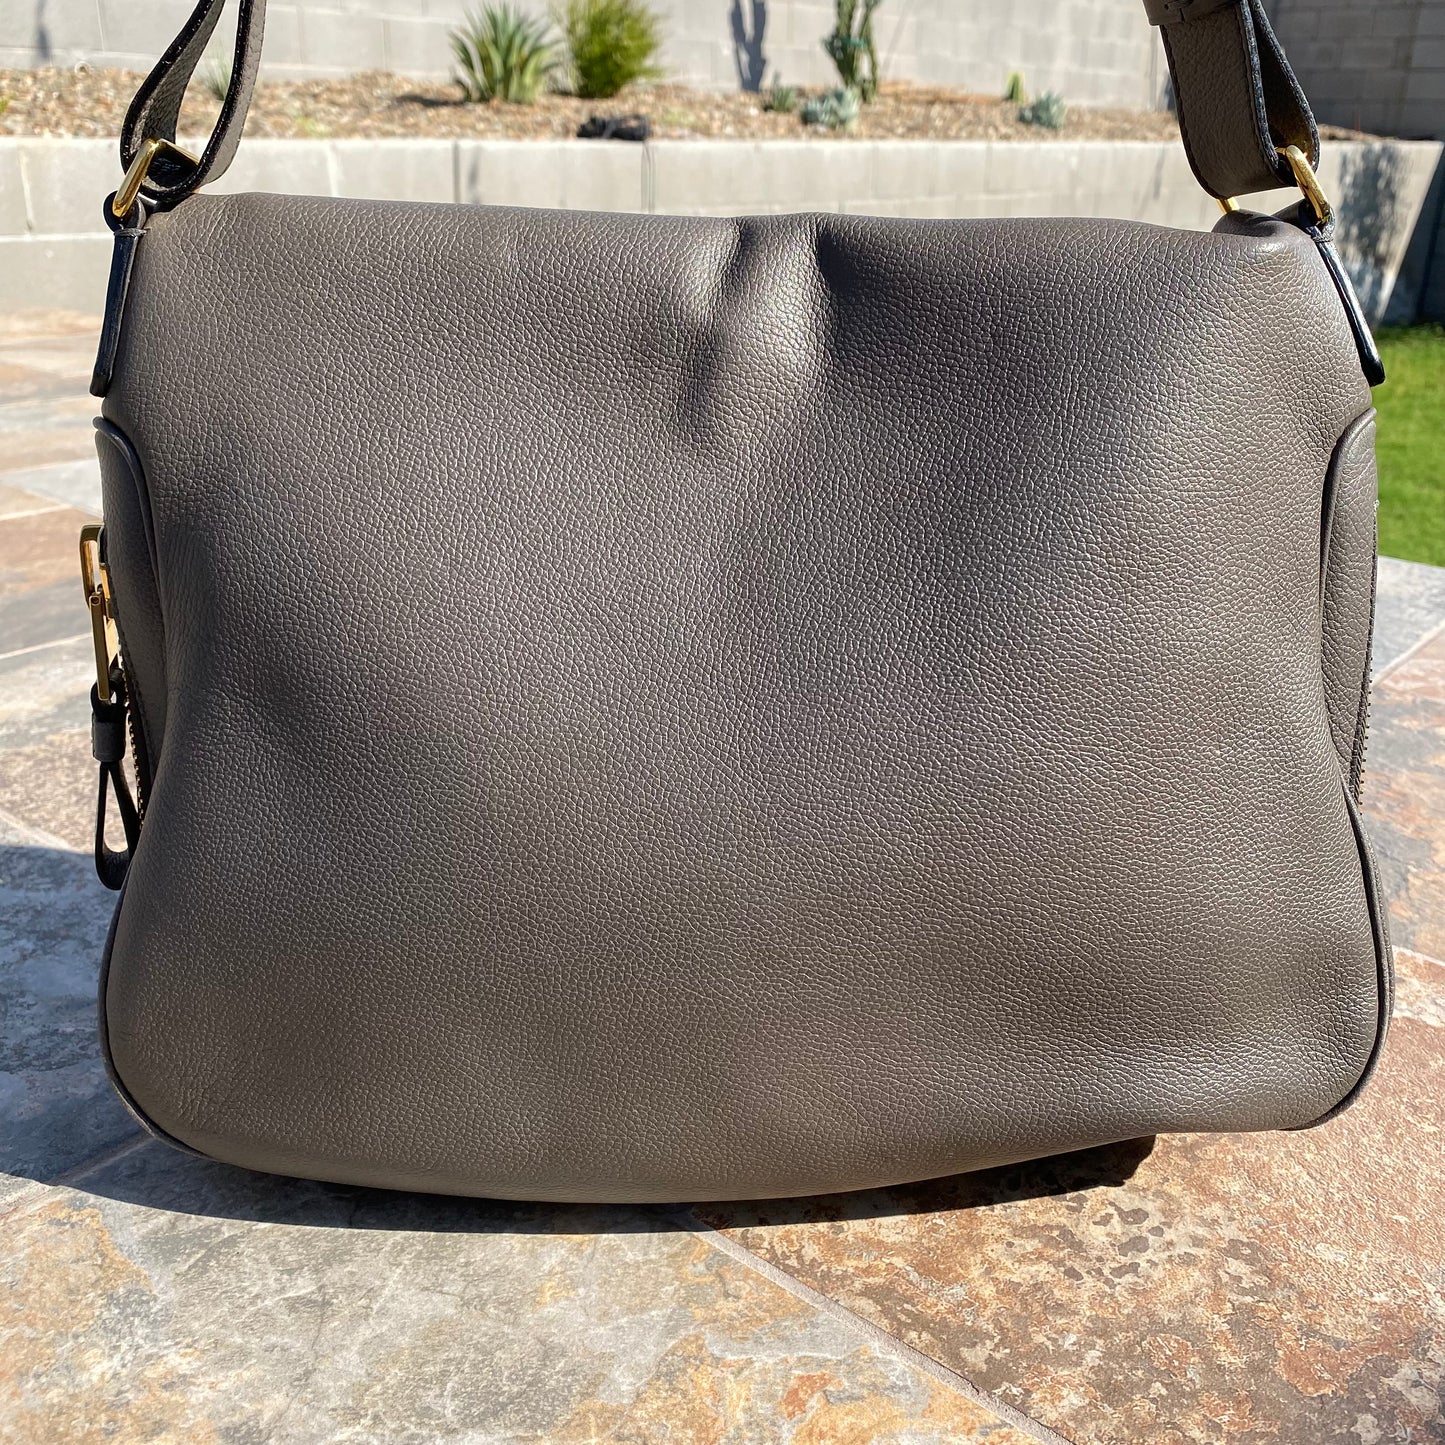 Tom Ford Grained Leather Jennifer Saddle Bag